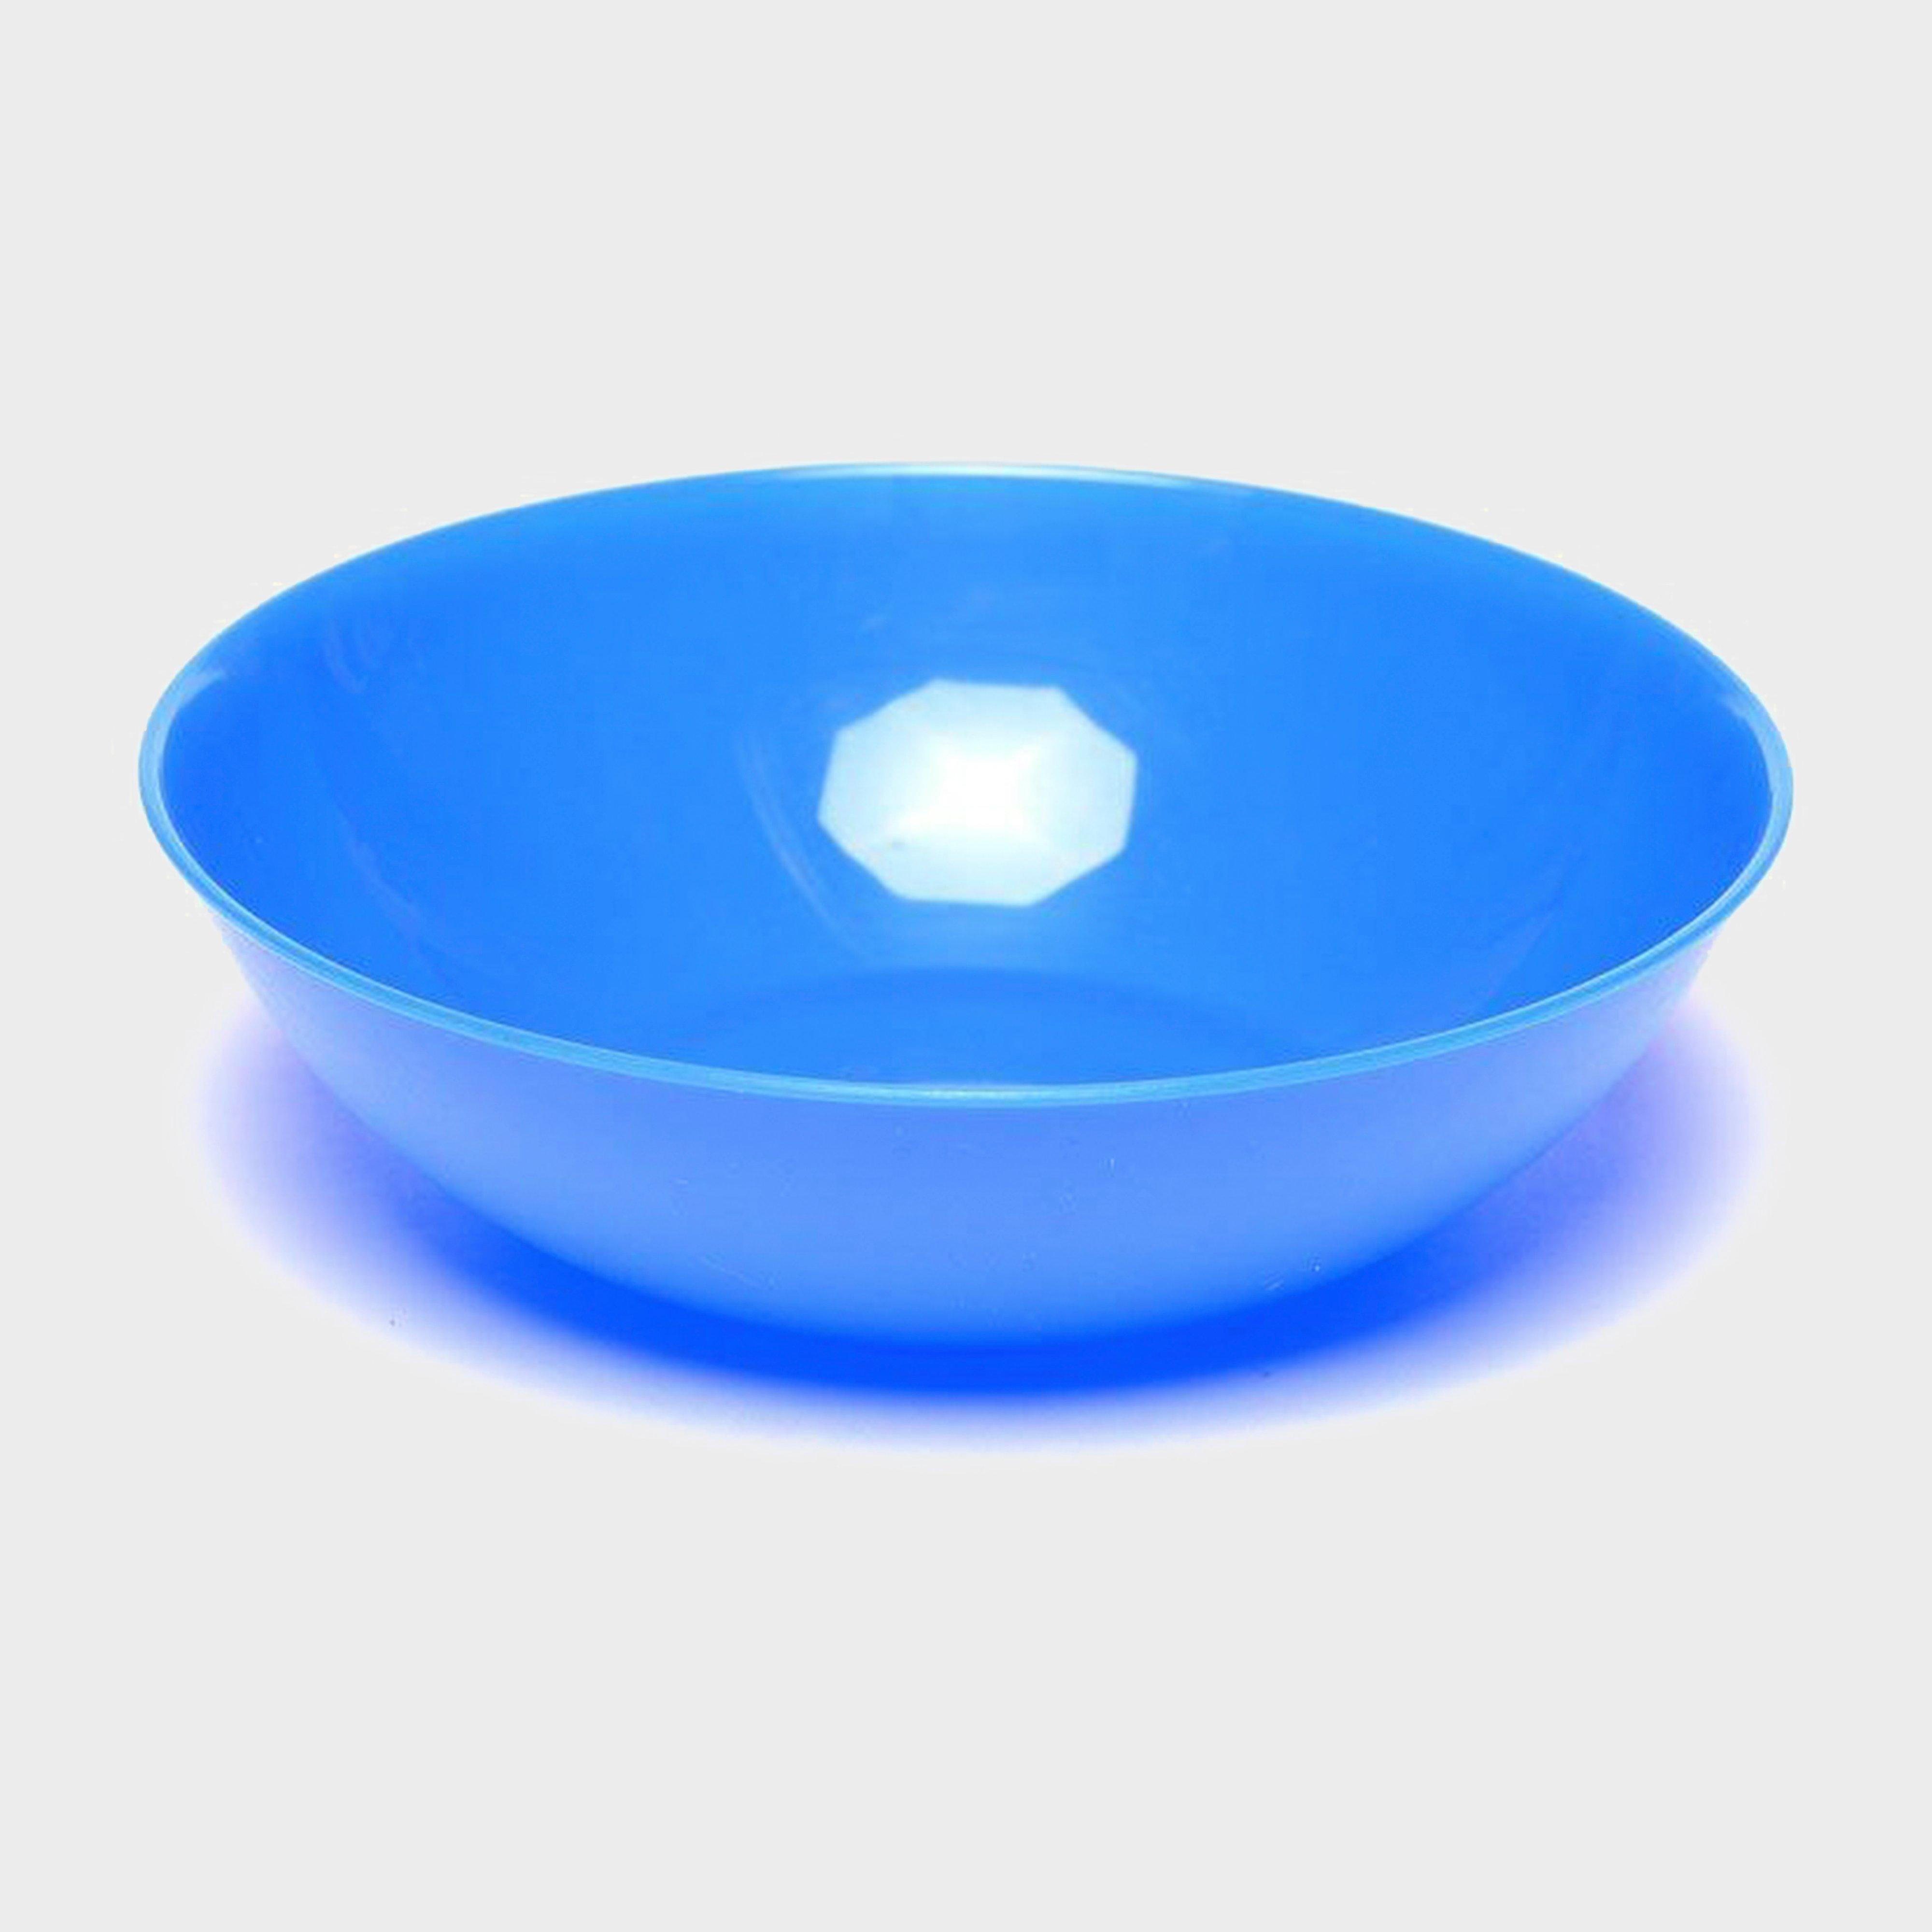 Hi-gear Plastic Bowl  Blue